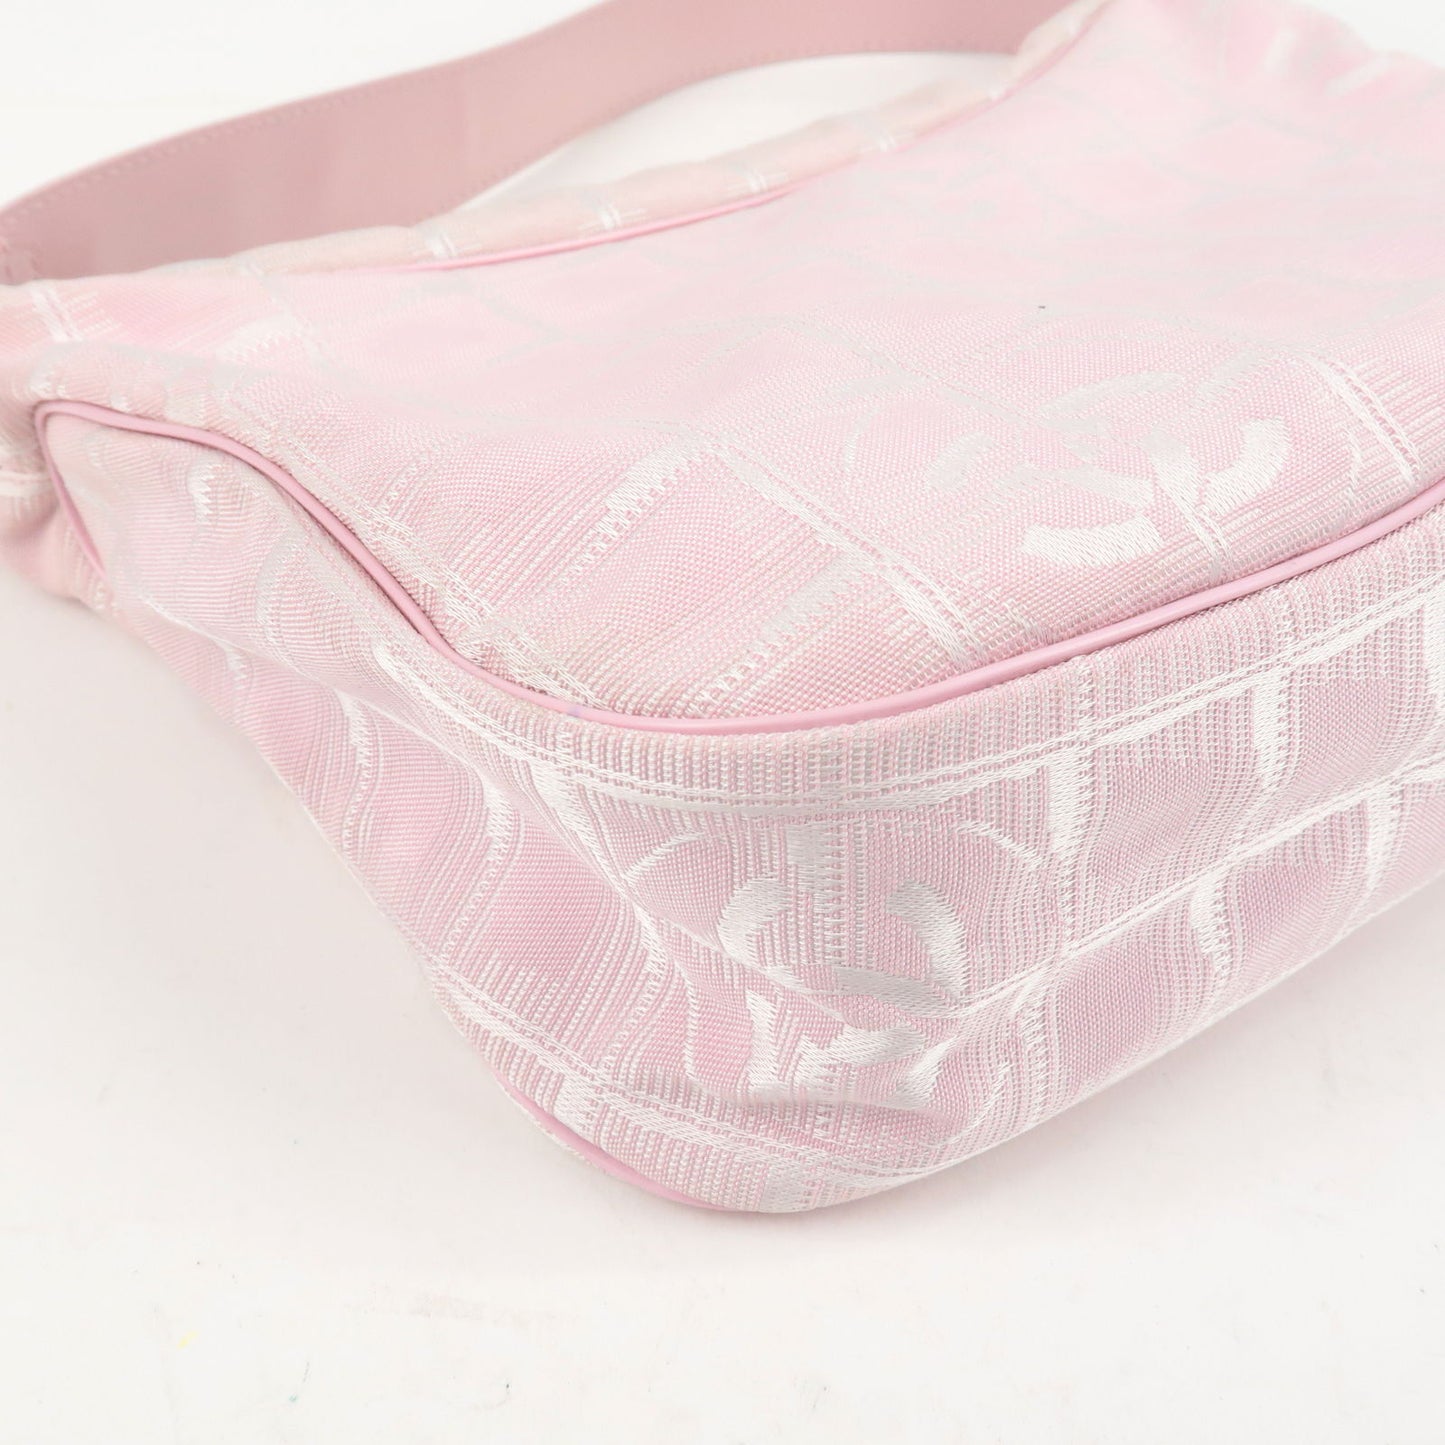 Chanel Travel Line Bag Pink - Gem